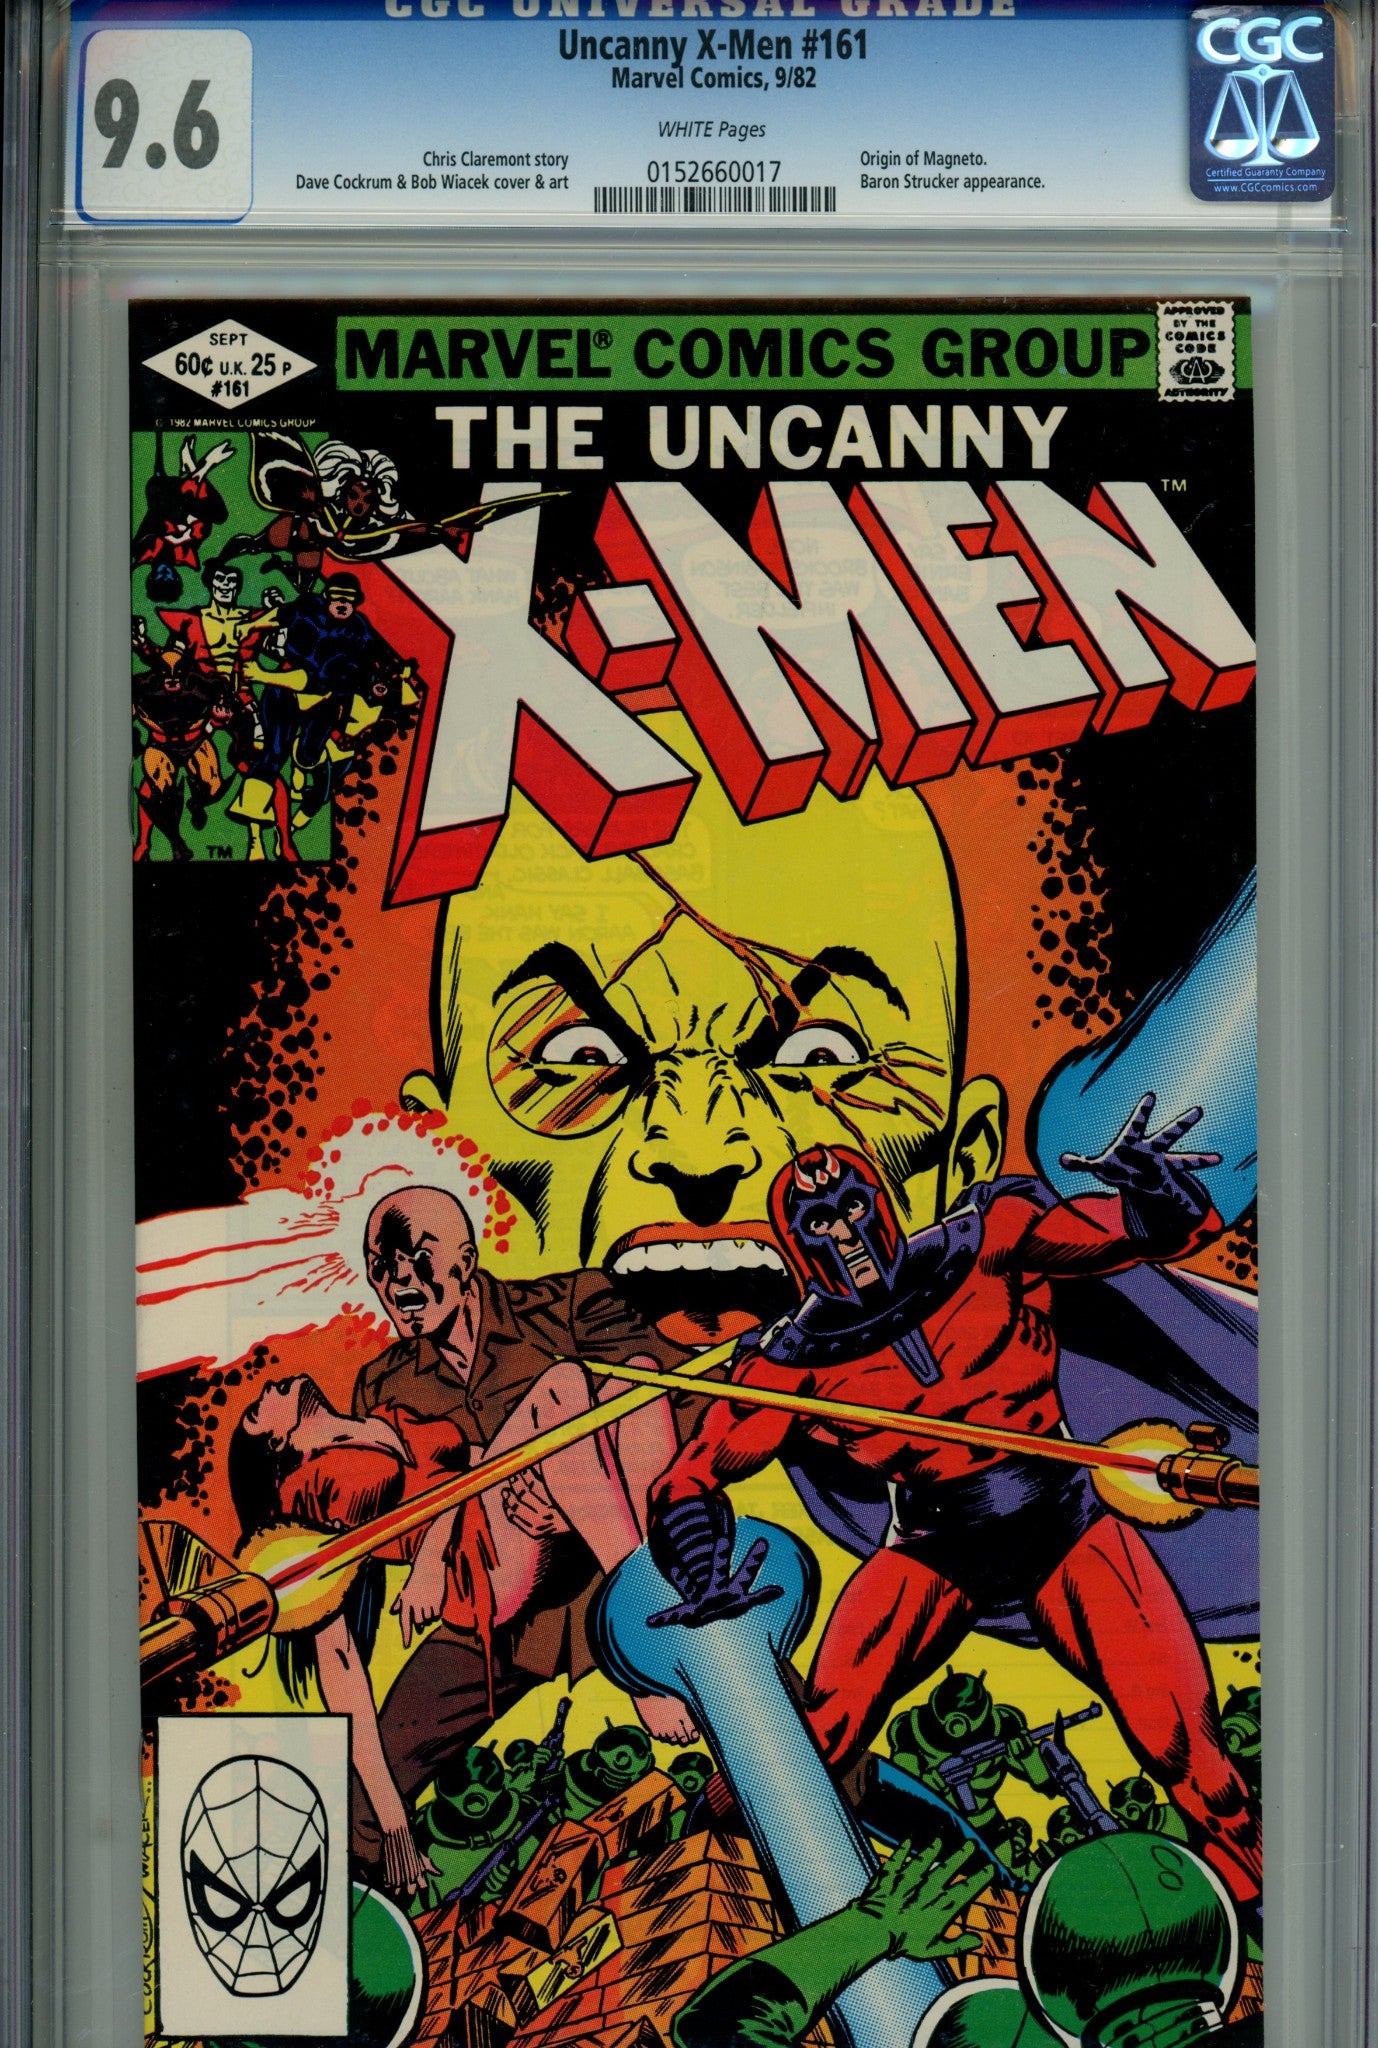 The Uncanny X-Men Vol 1 161 CGC 9.6 (1982)